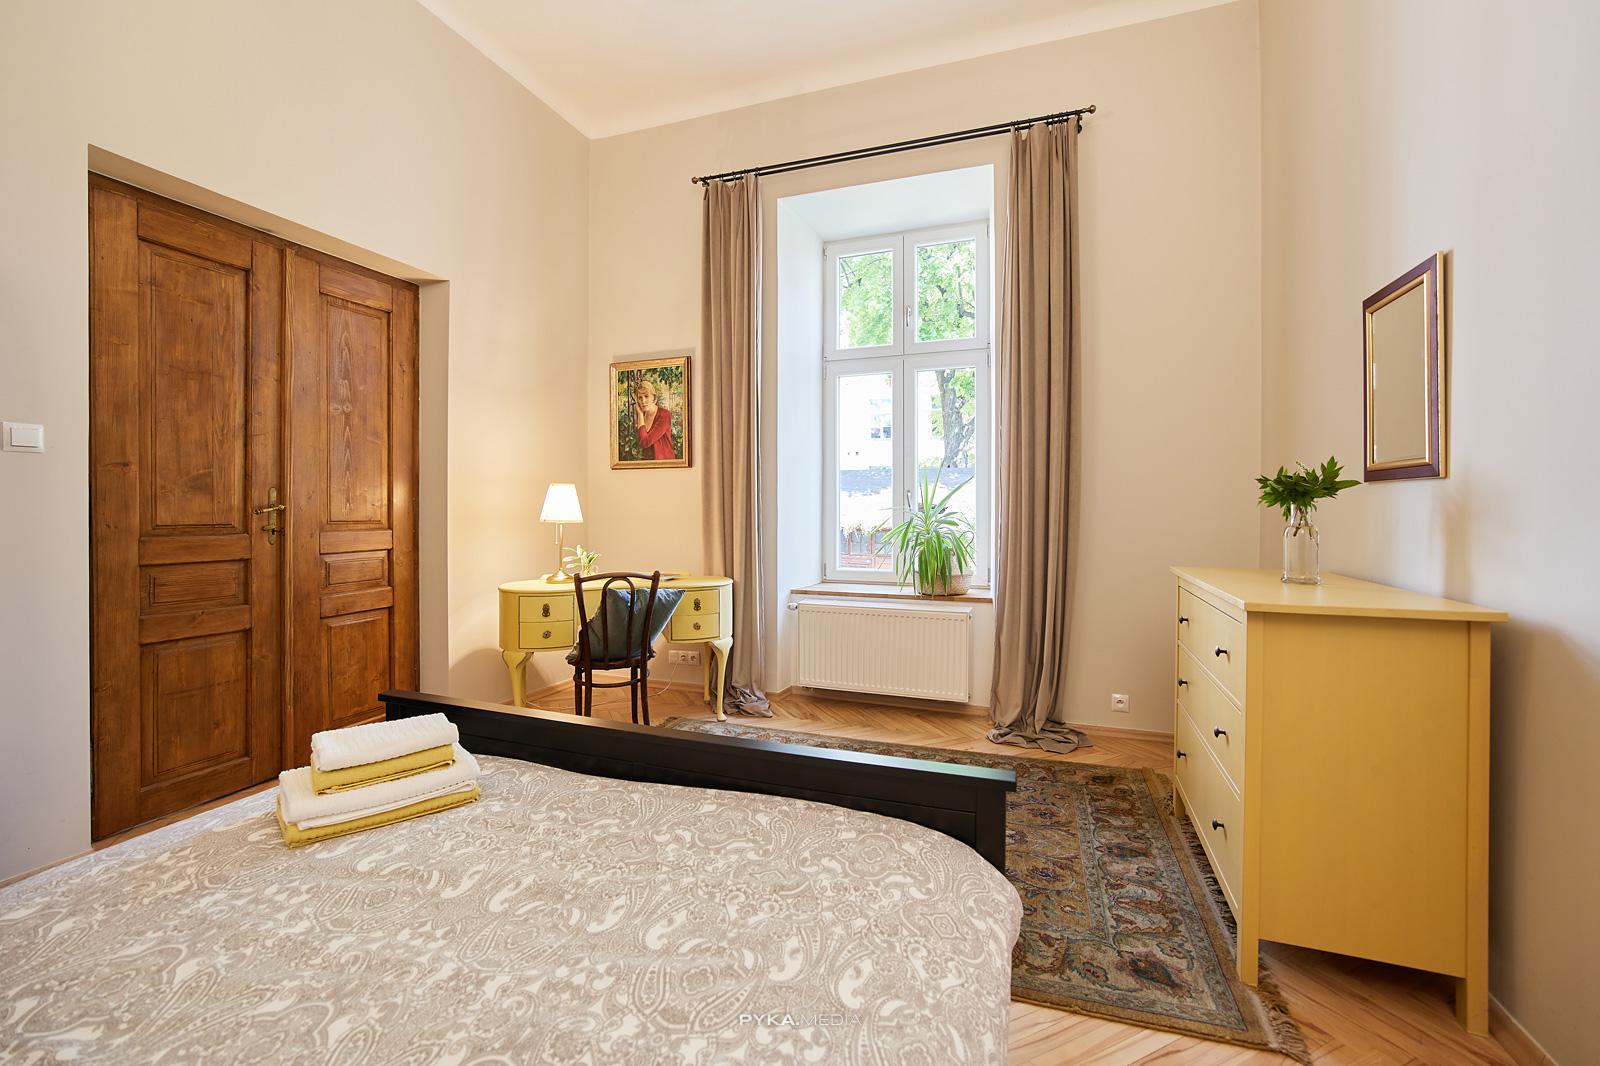 Zdjęcie apartamentu Airbnb w Krakowie. Sypialnia w apartamencie.